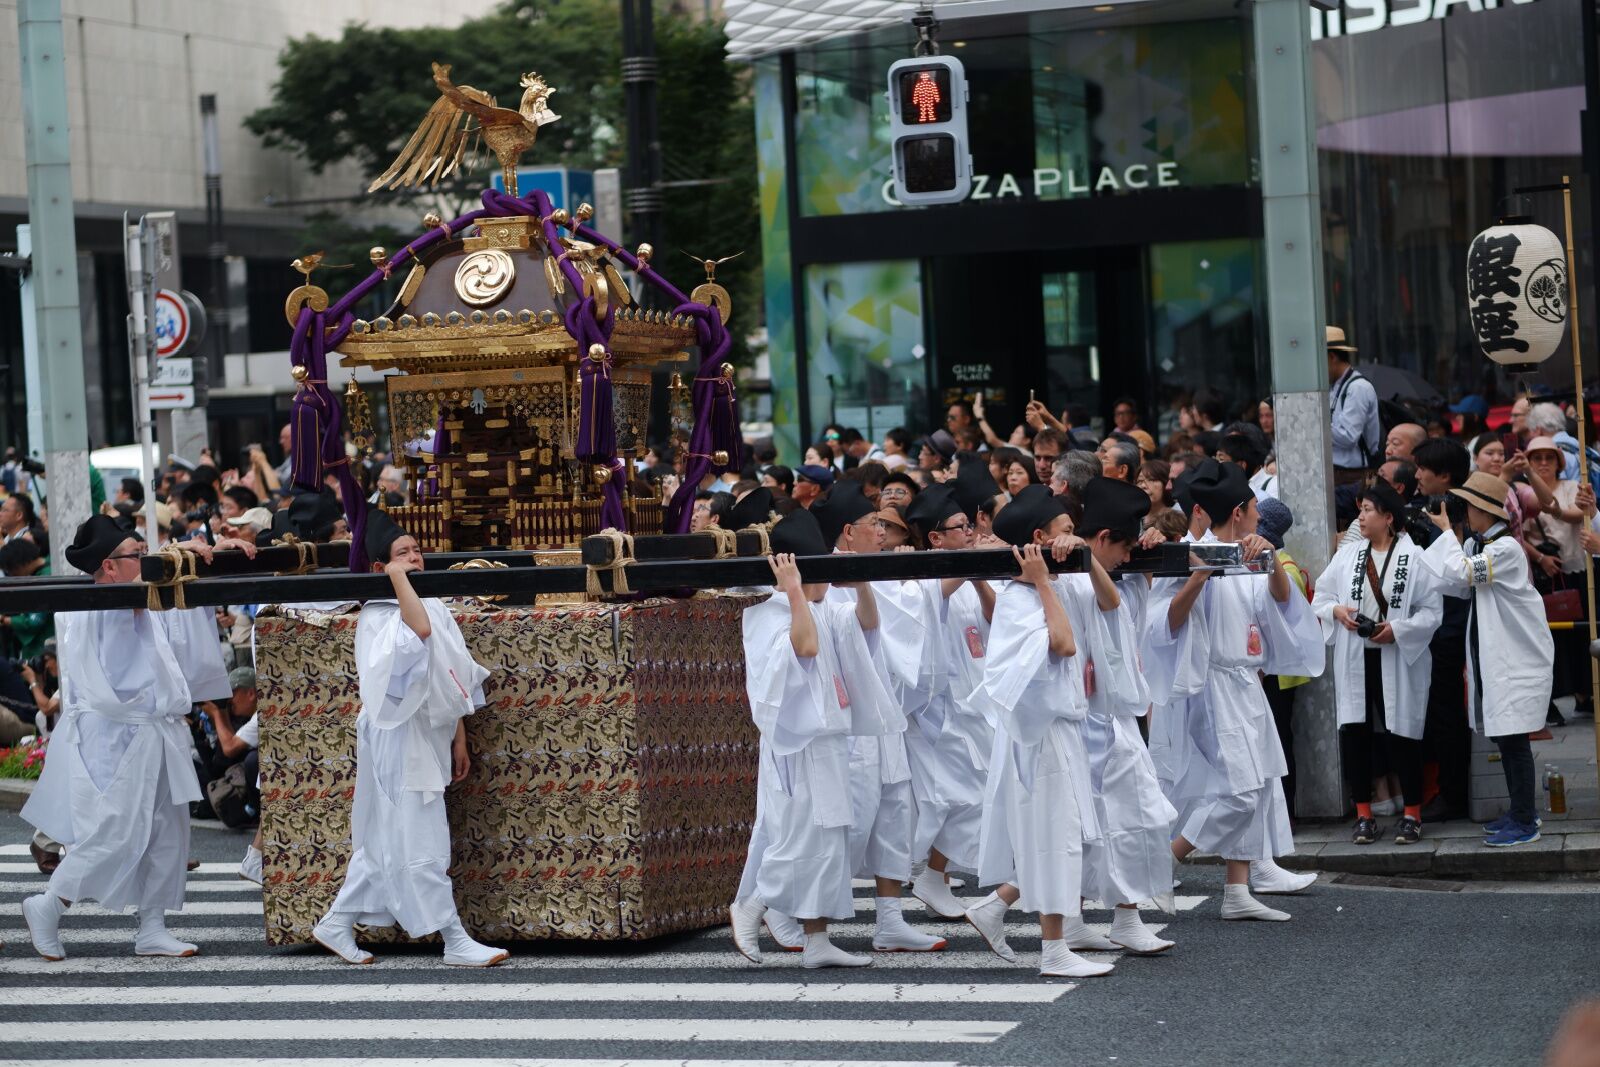 festivals in tokyo - june parade